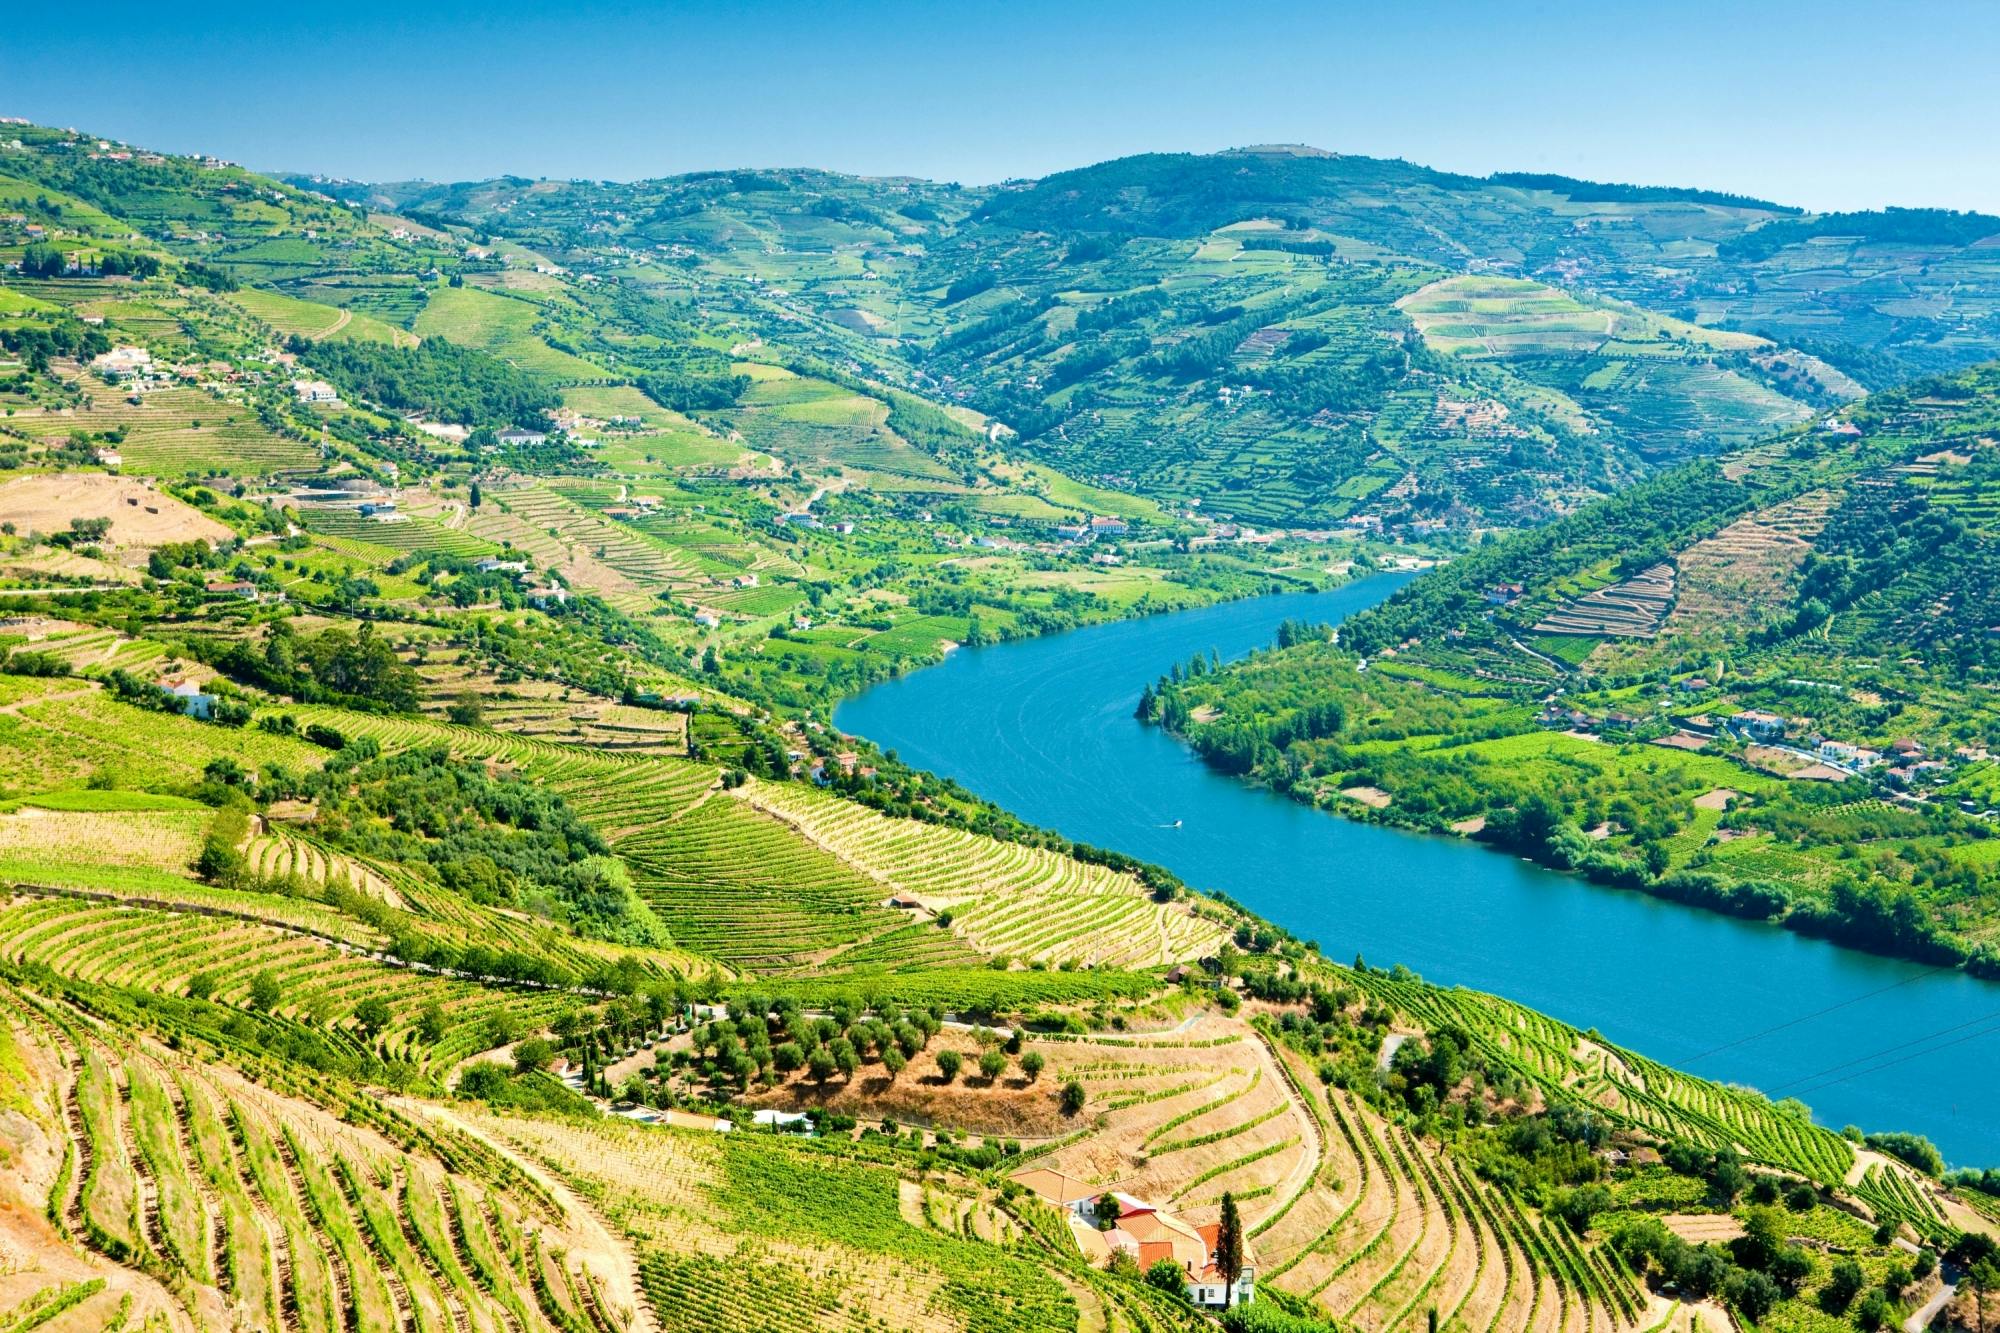 Visita guiada al valle del Duero con cata de vinos, almuerzo y crucero por el río desde Oporto